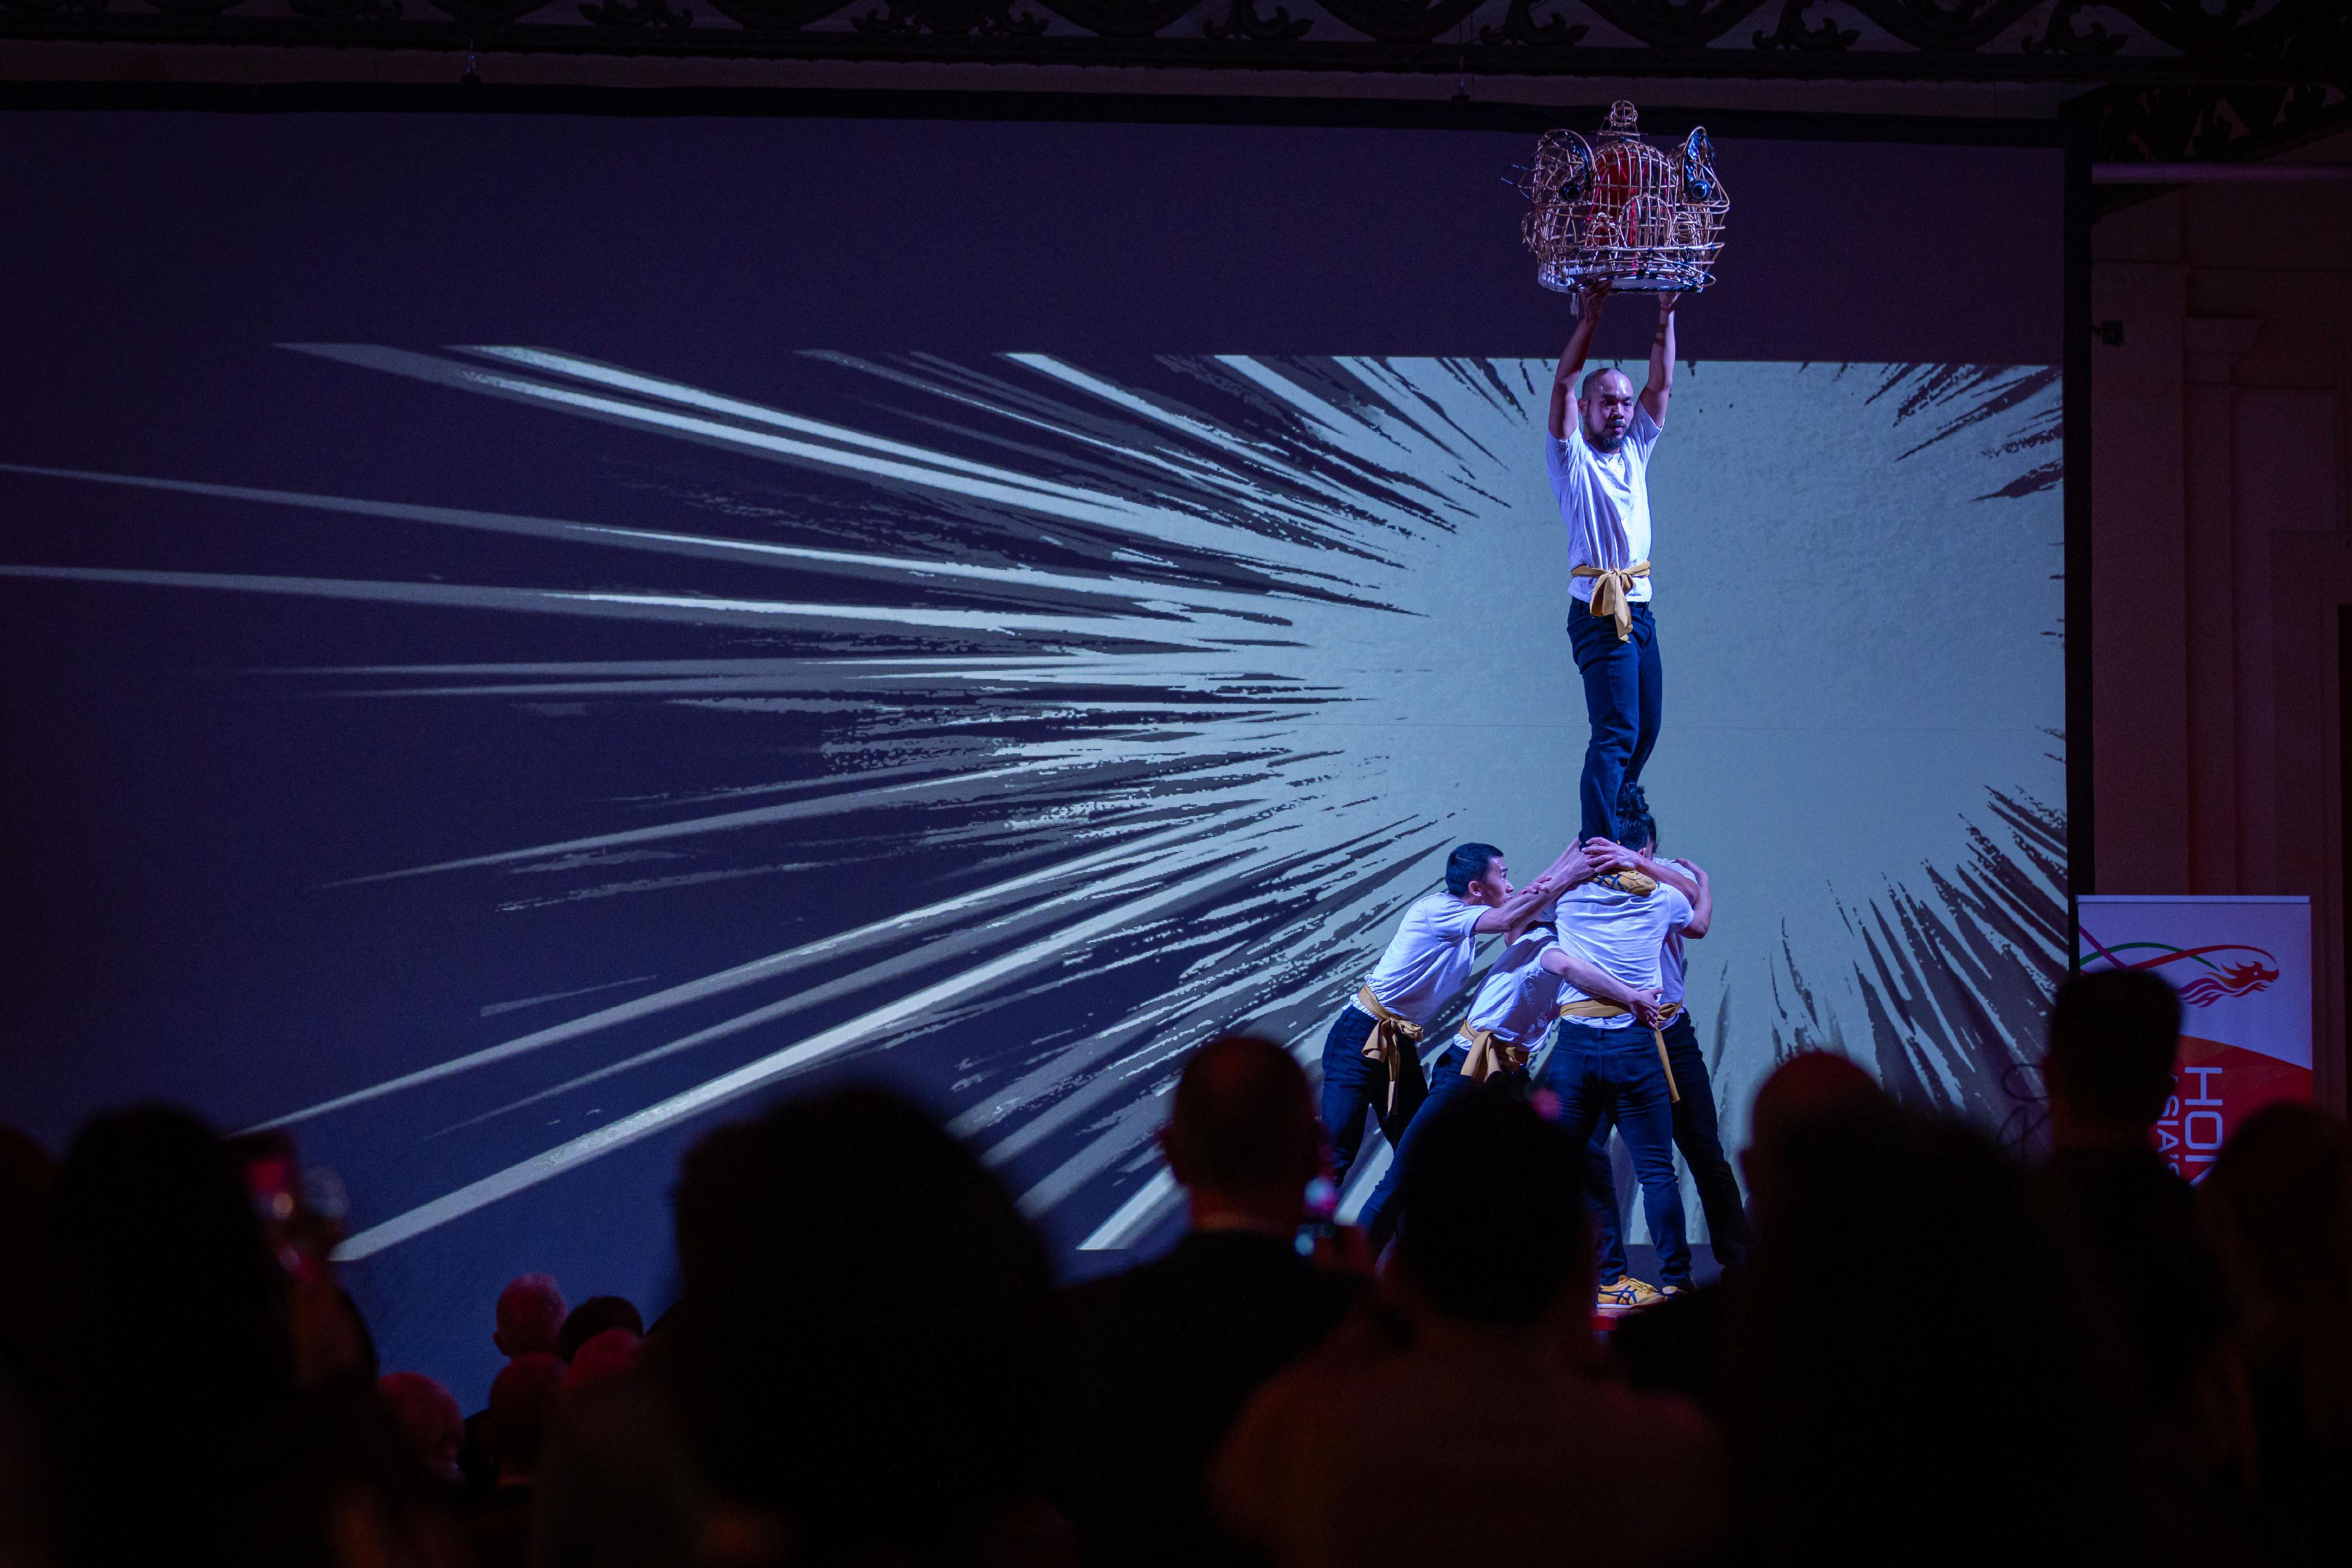 二月二十日（布鲁塞尔时间）在比利时布鲁塞尔举办的新春酒会上，TS Crew舞团表演以龙为主题的舞蹈《Convergence: MovINK Dragon》。呼应舞蹈动作并配以视觉和声音效果的动画则由动漫创作人叶伟青创作及导演。整场演出由香港艺术中心（动漫基地）策划及制作。